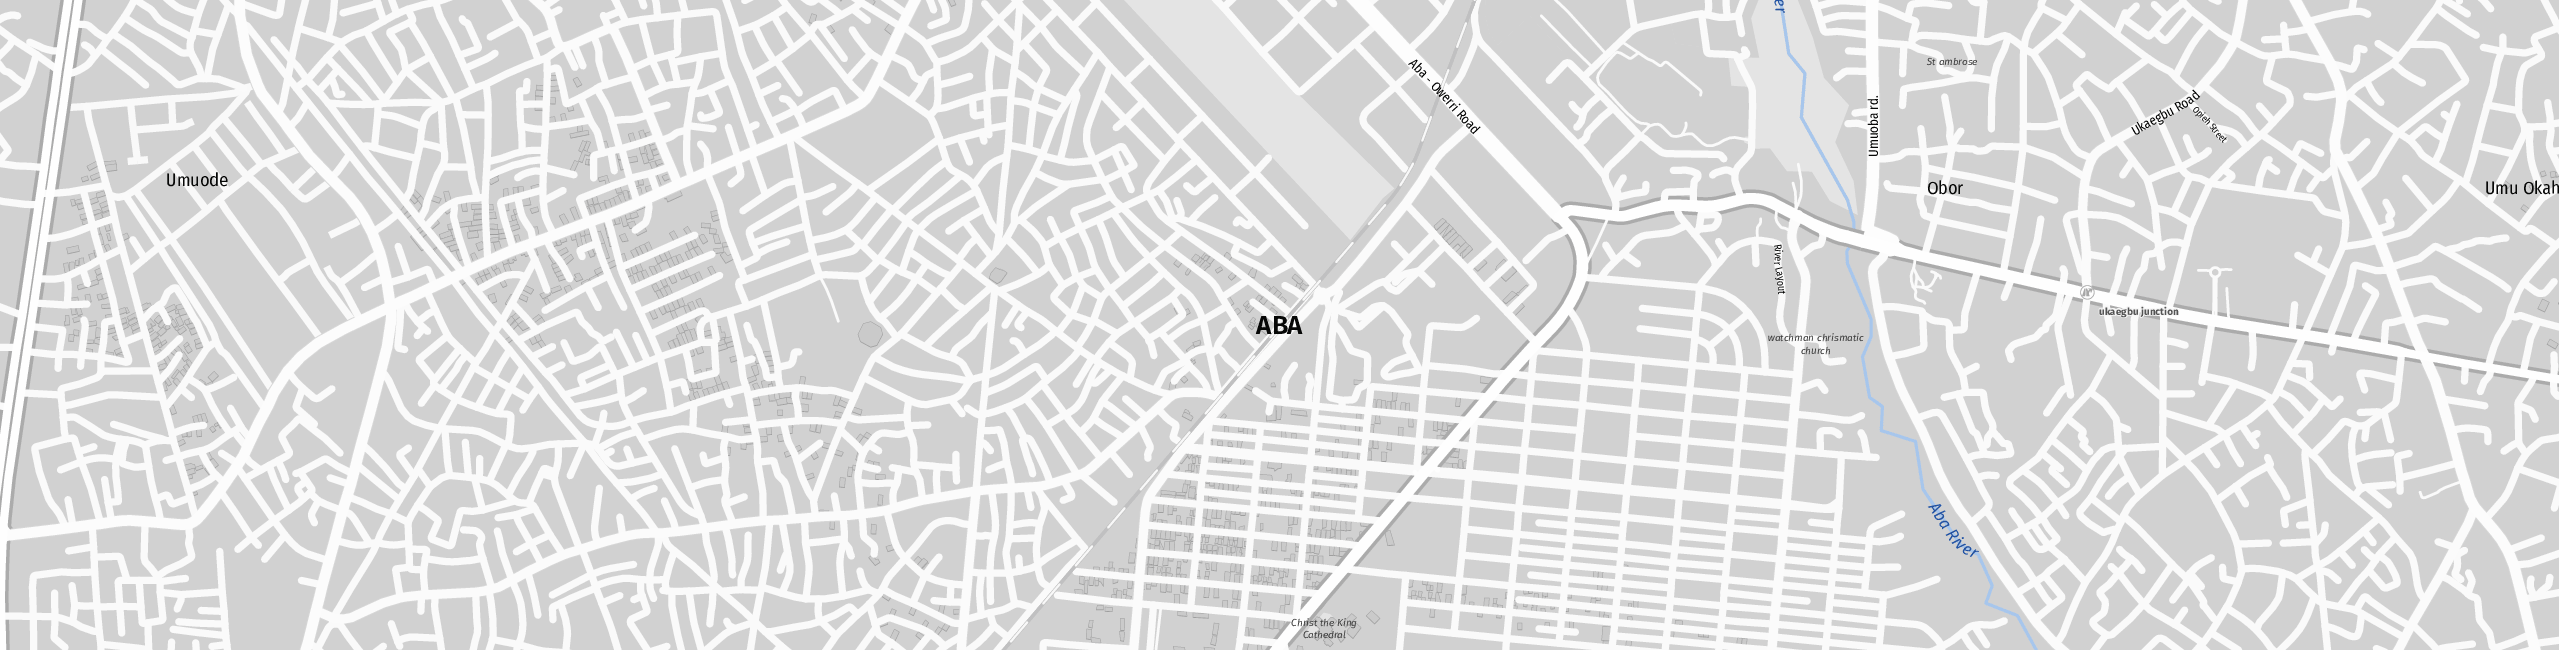 Stadtplan Aba zum Downloaden.